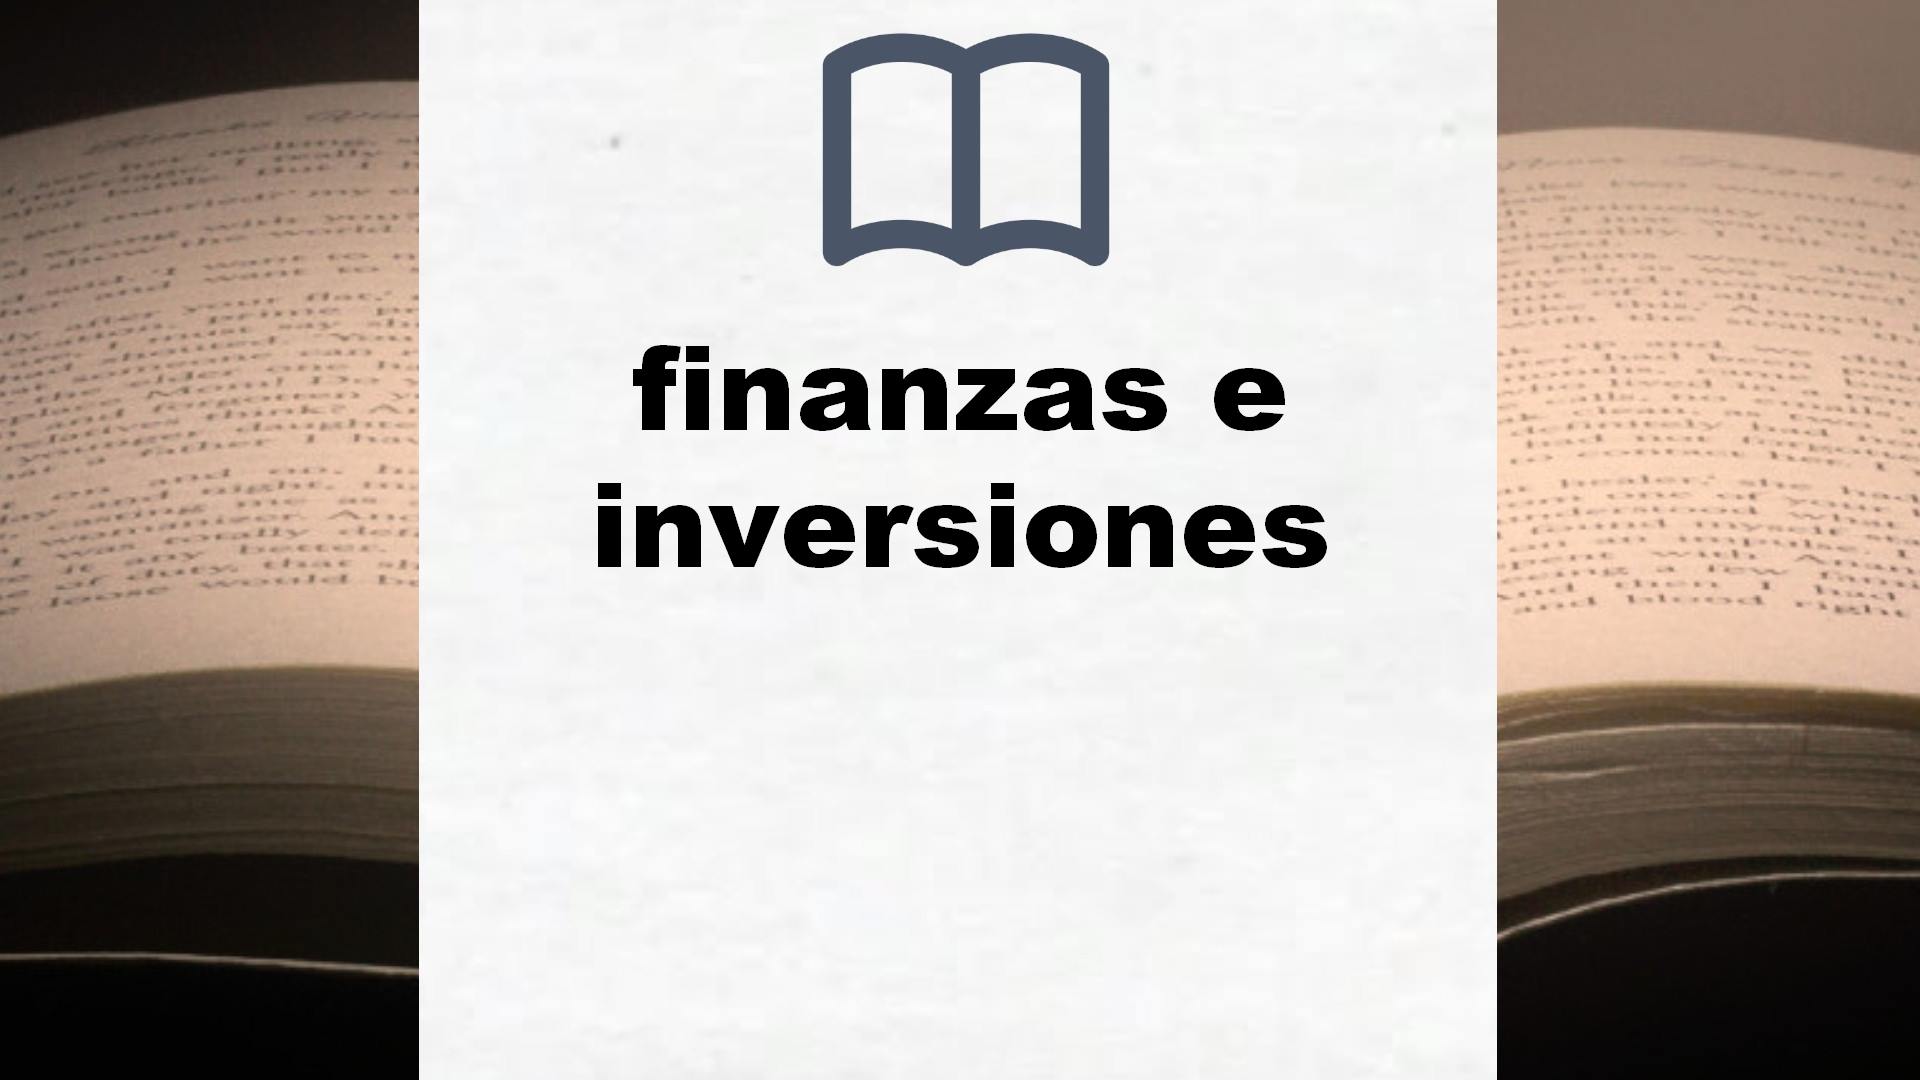 Libros sobre finanzas e inversiones